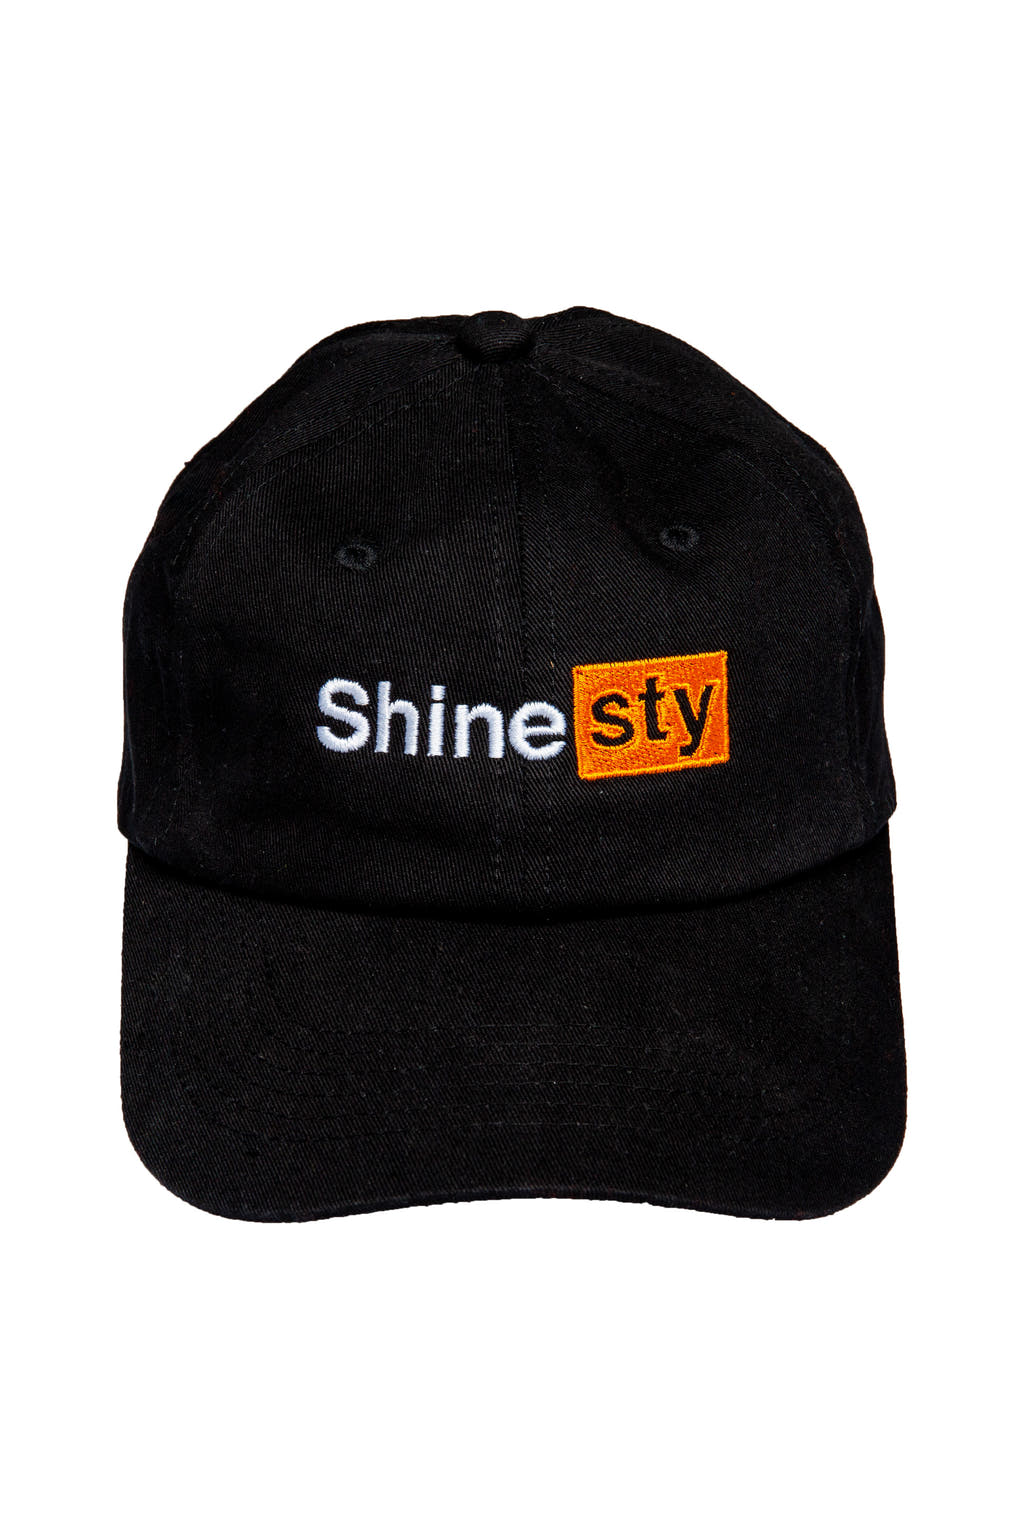 Pornhub shinesty dad hat 